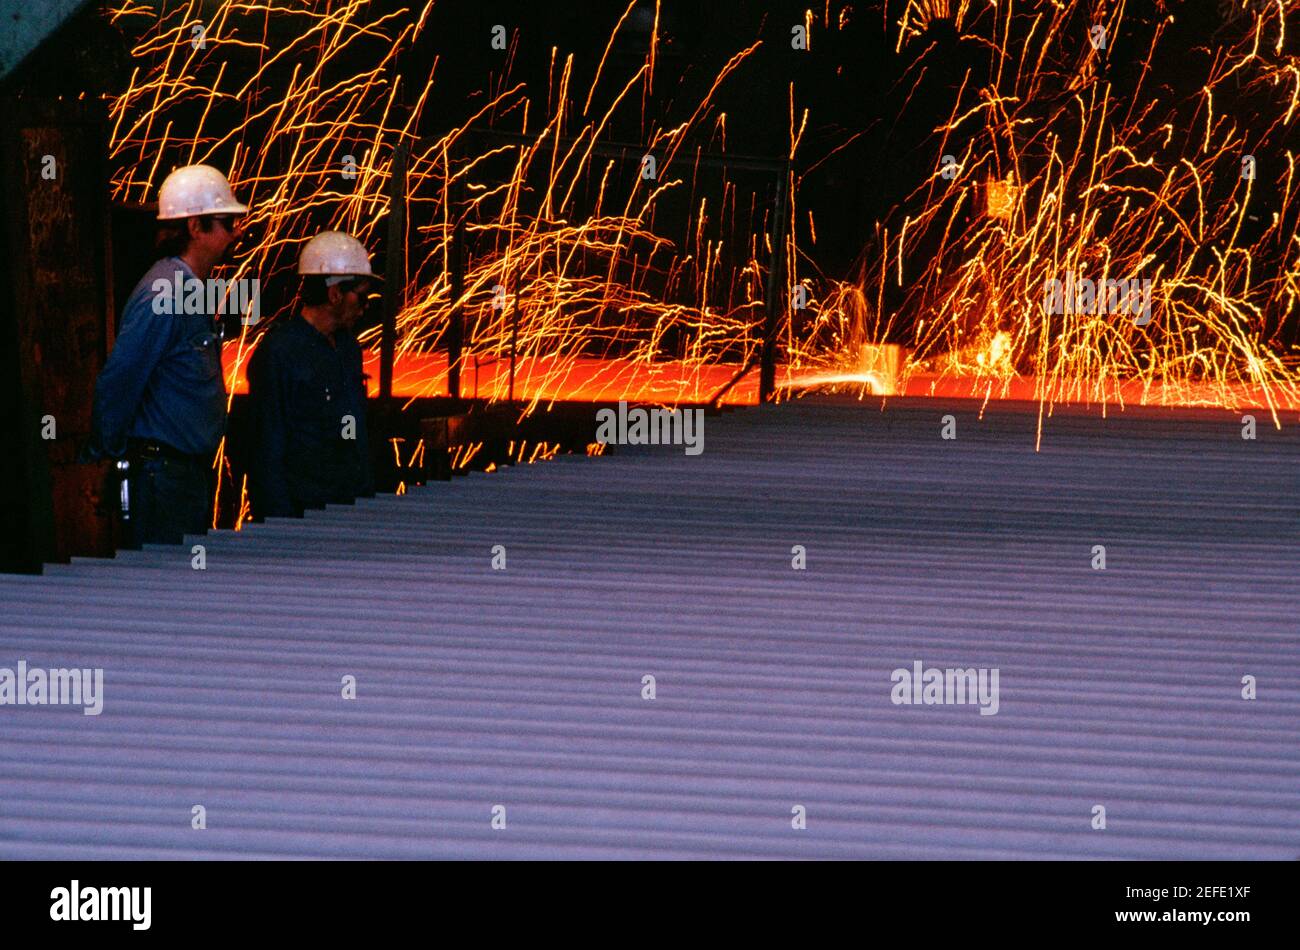 Profil latéral de deux ouvriers de fonderie debout dans un acier broyeur Banque D'Images